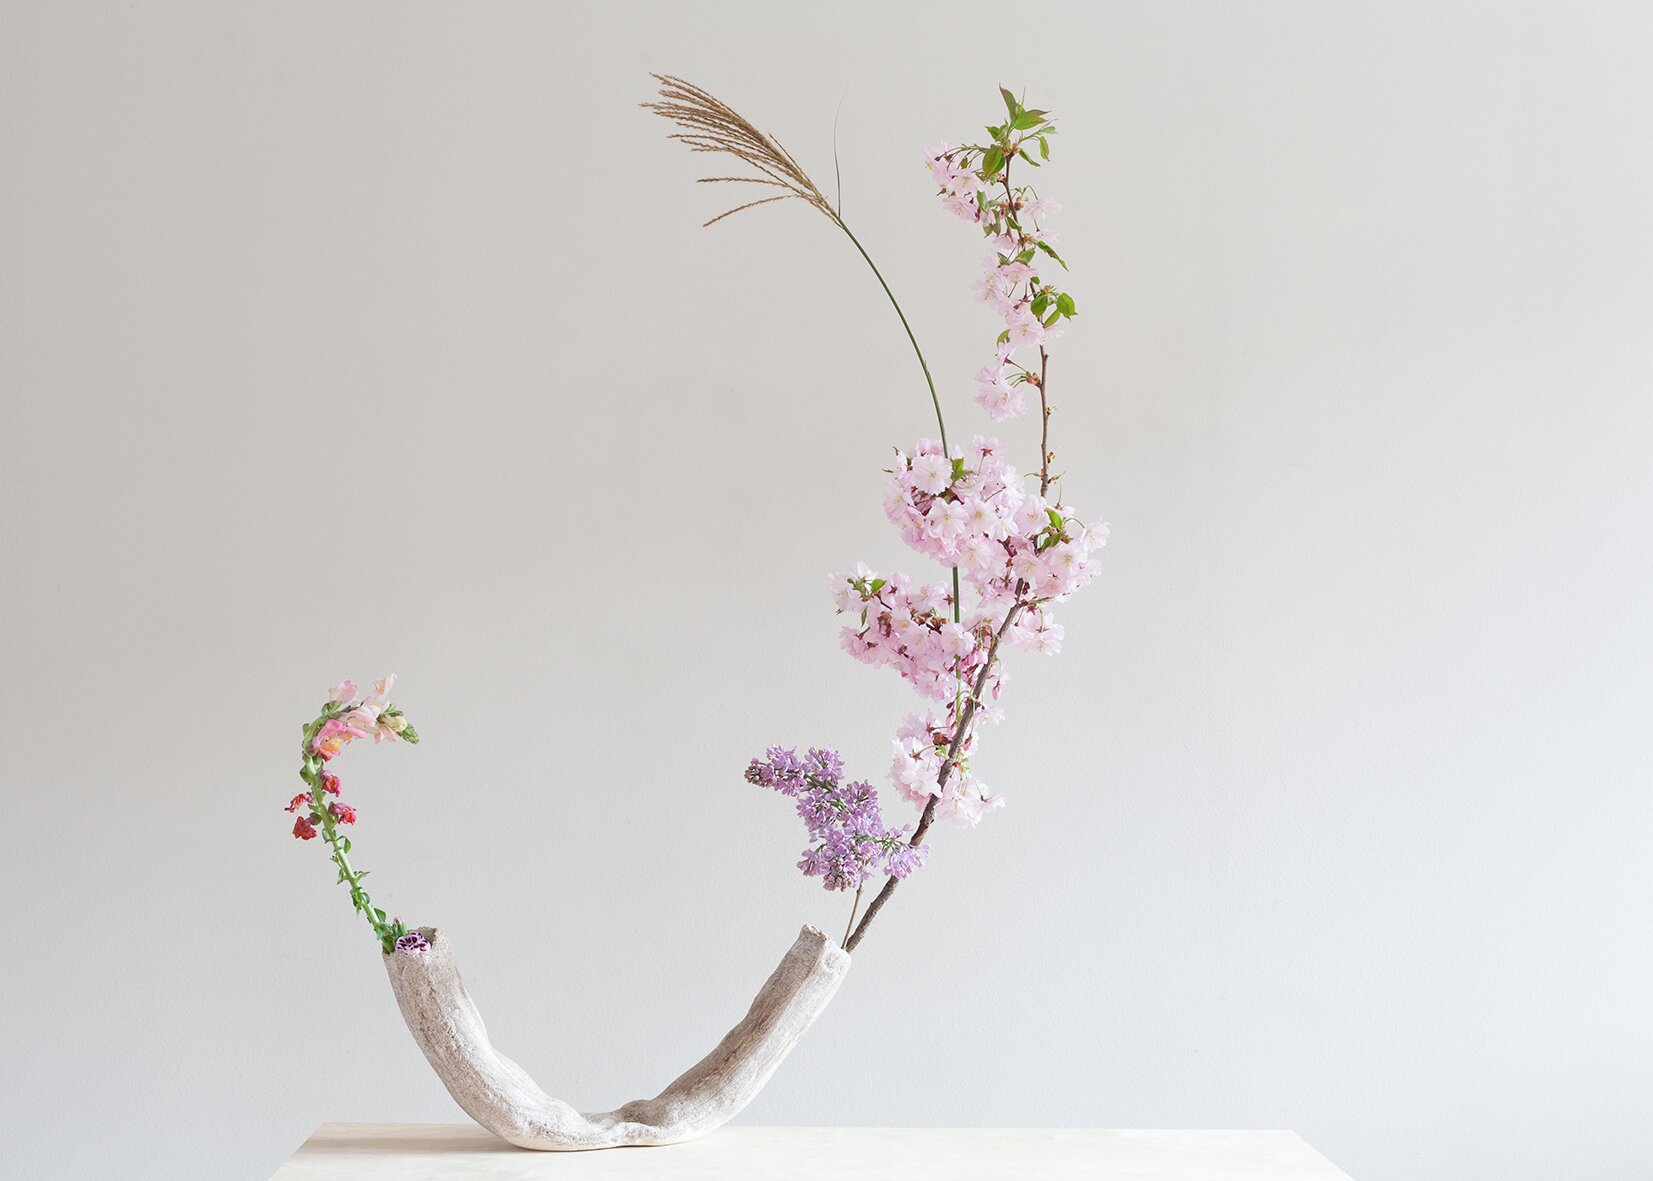 2-Flower Vase, high fired glazed porcelain on stoneware, 15 x 22 cm,  2019
